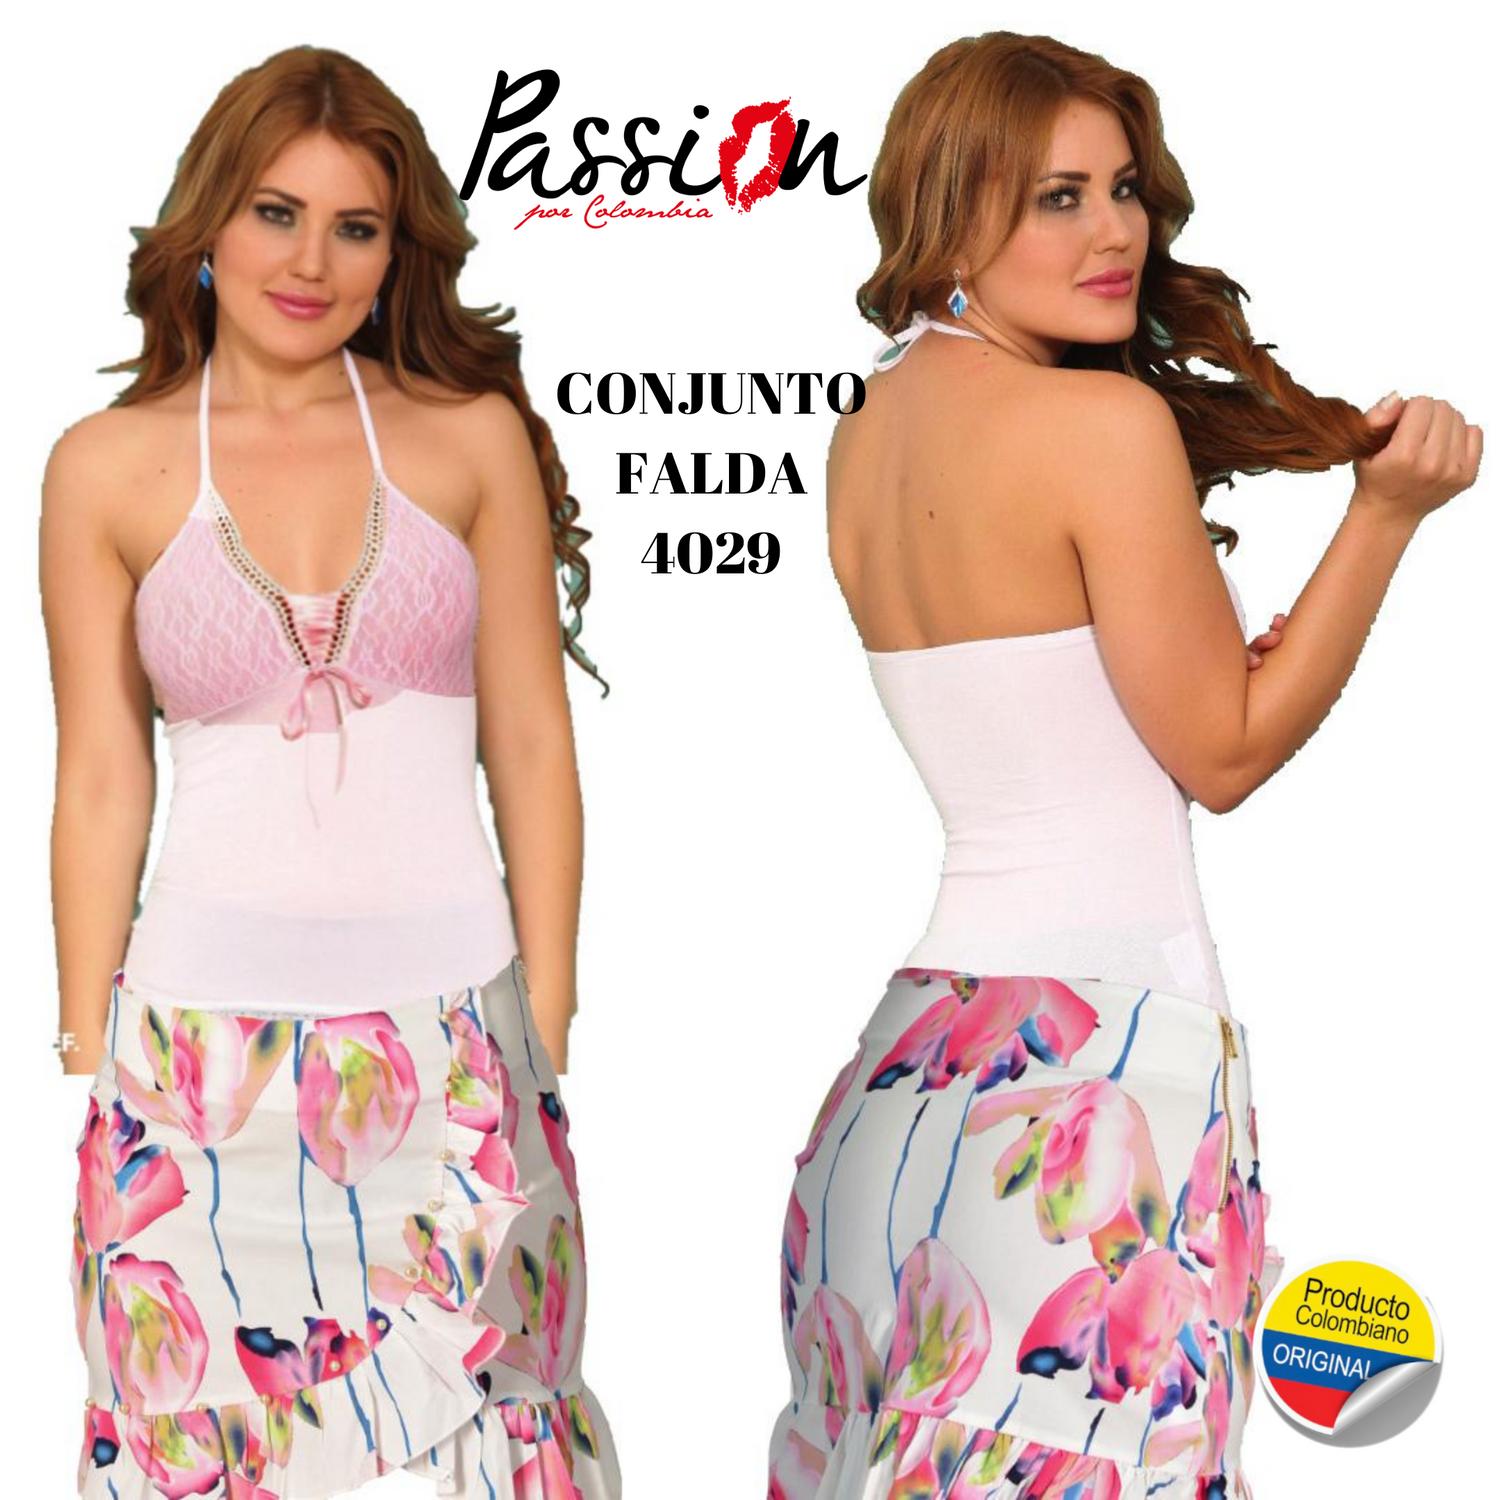 Comprar Conjunto de Falda y blusa Colombianos de Moda